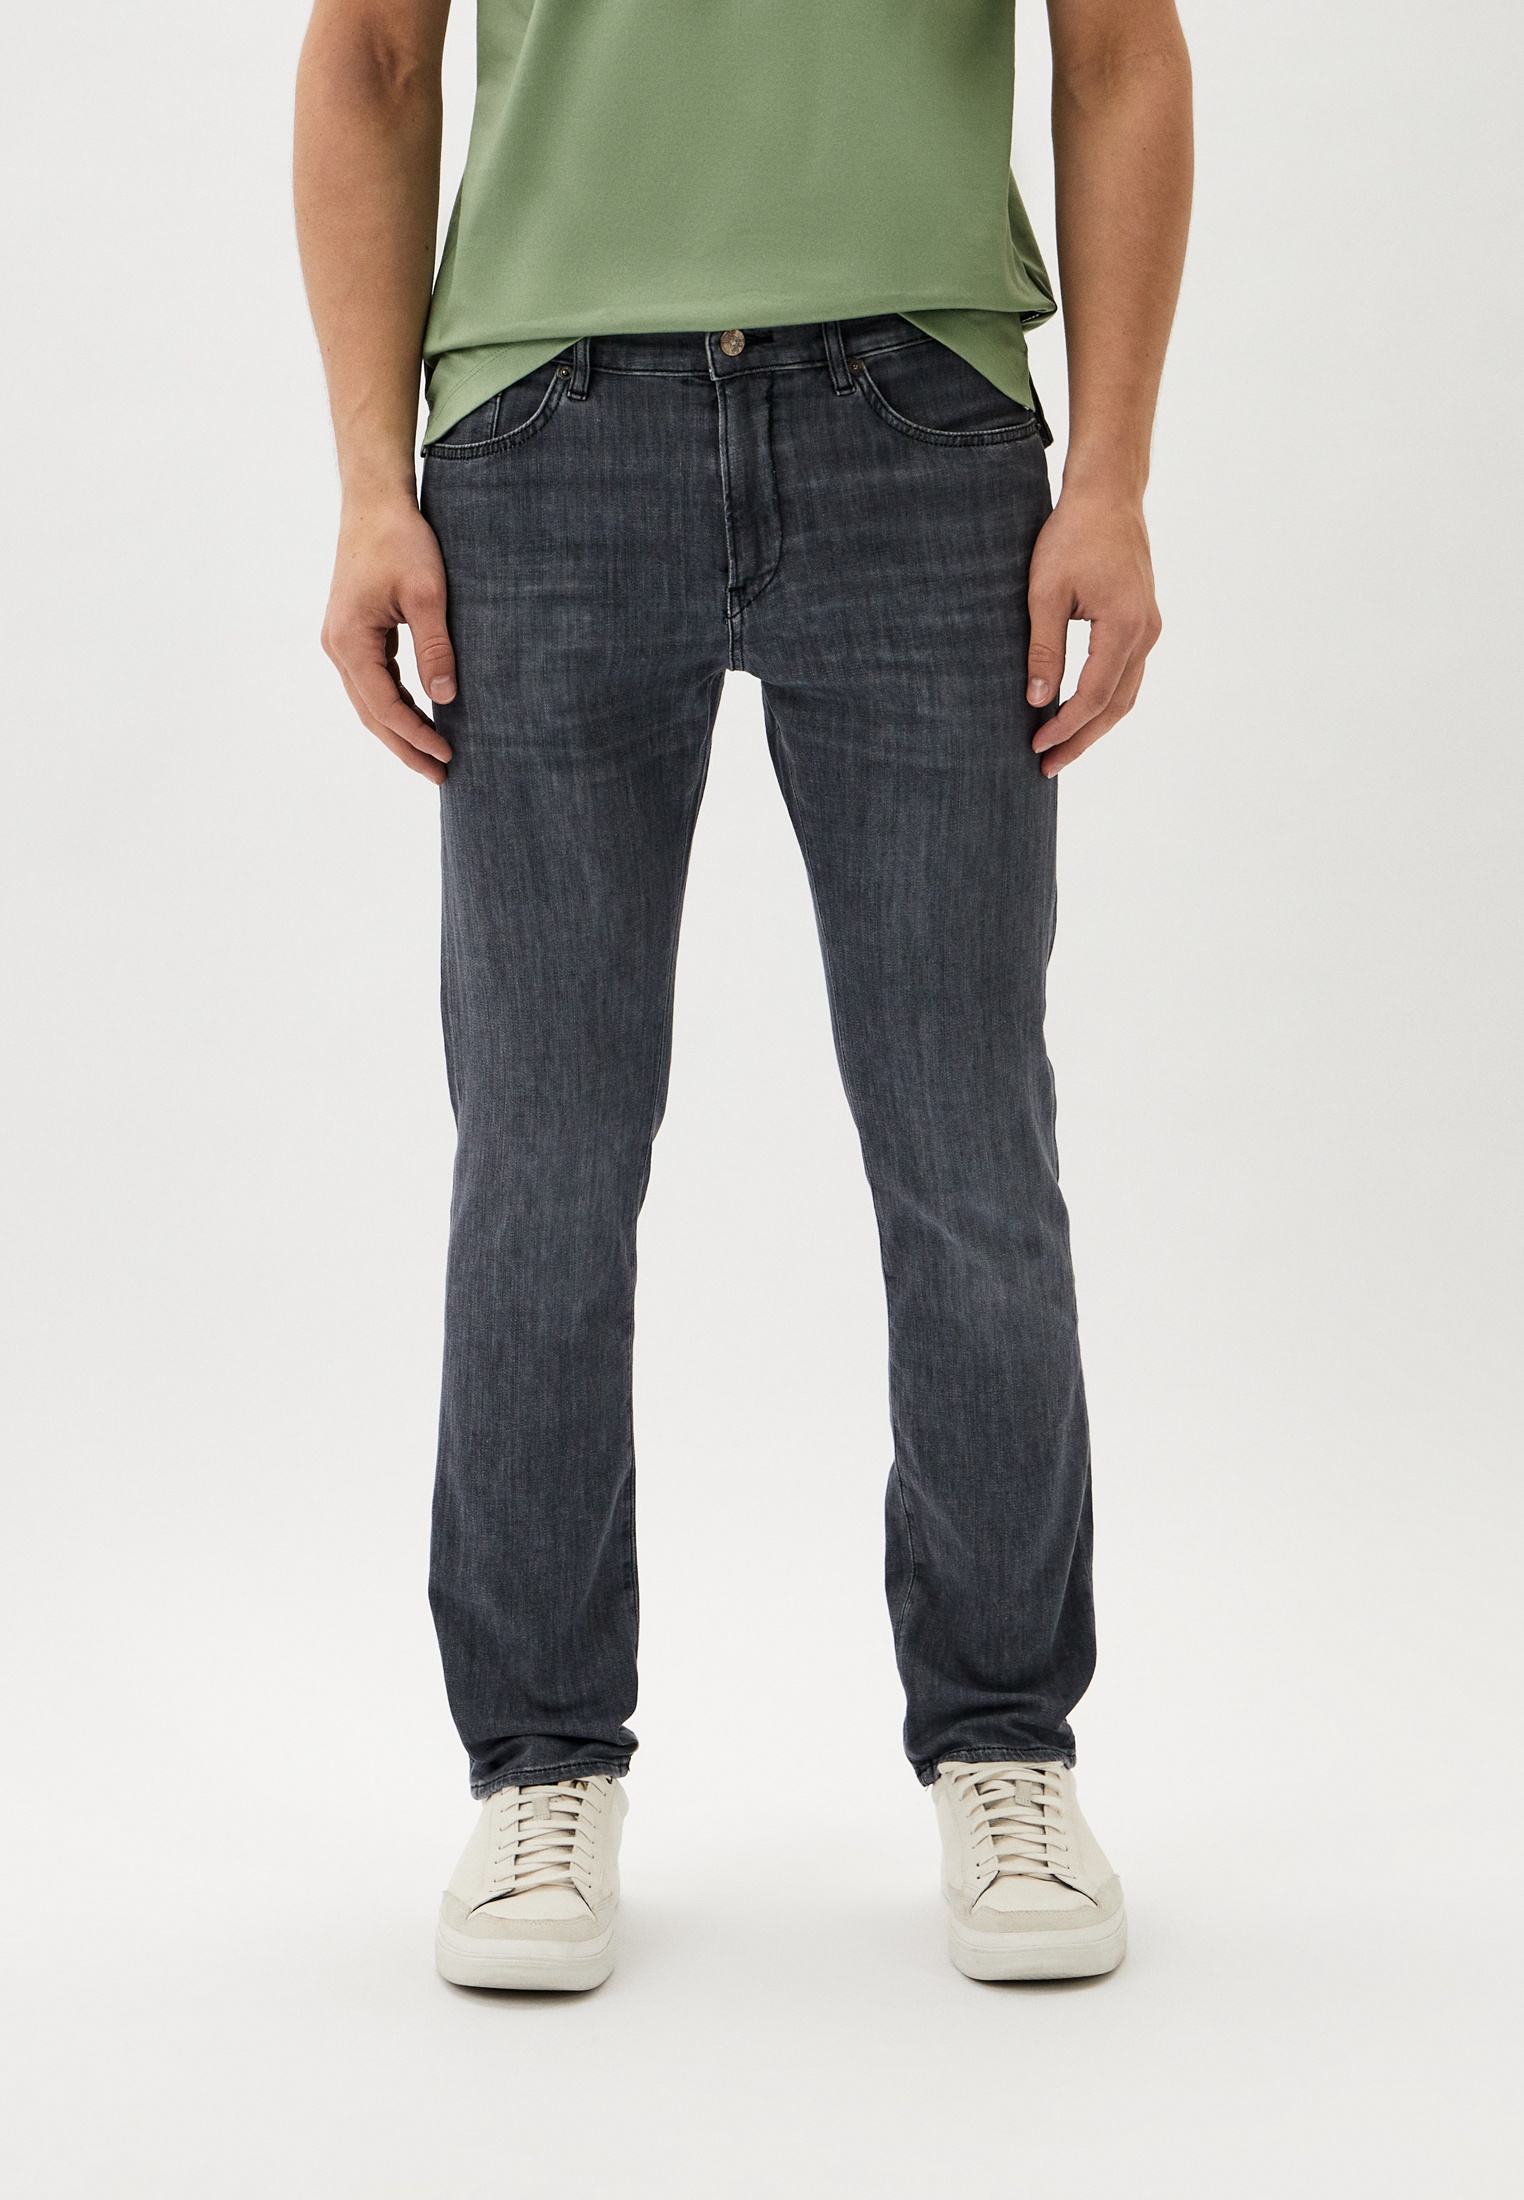 Мужские зауженные джинсы Boss (Босс) 50513619: изображение 1